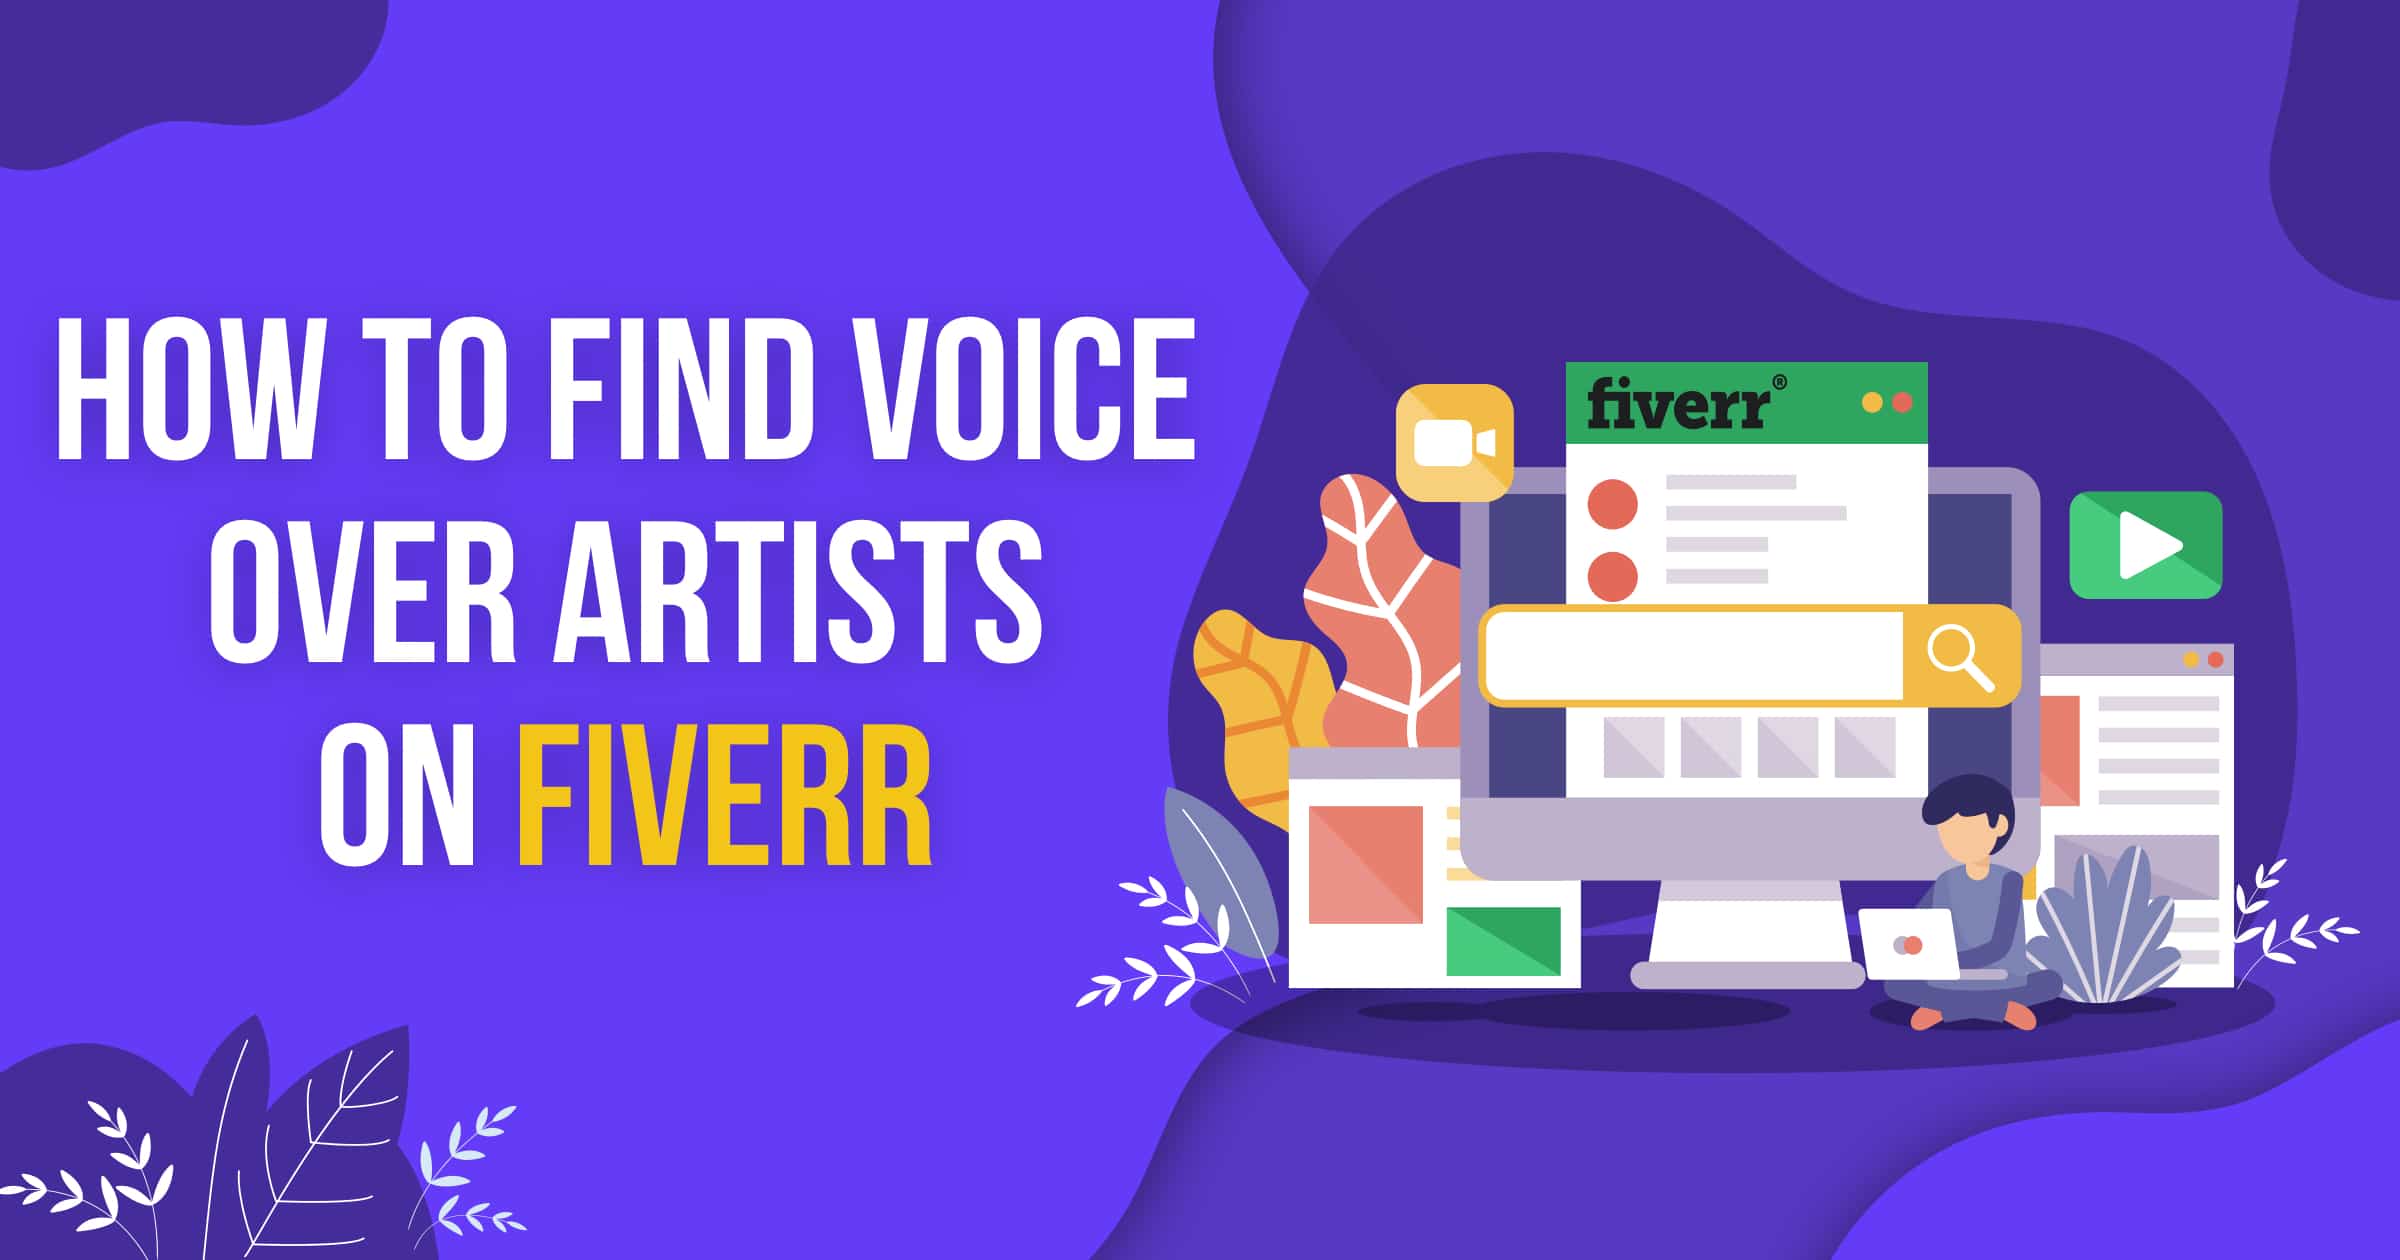 Fiverr Voice Over Reviews - Fiverr Voice Over Reviews